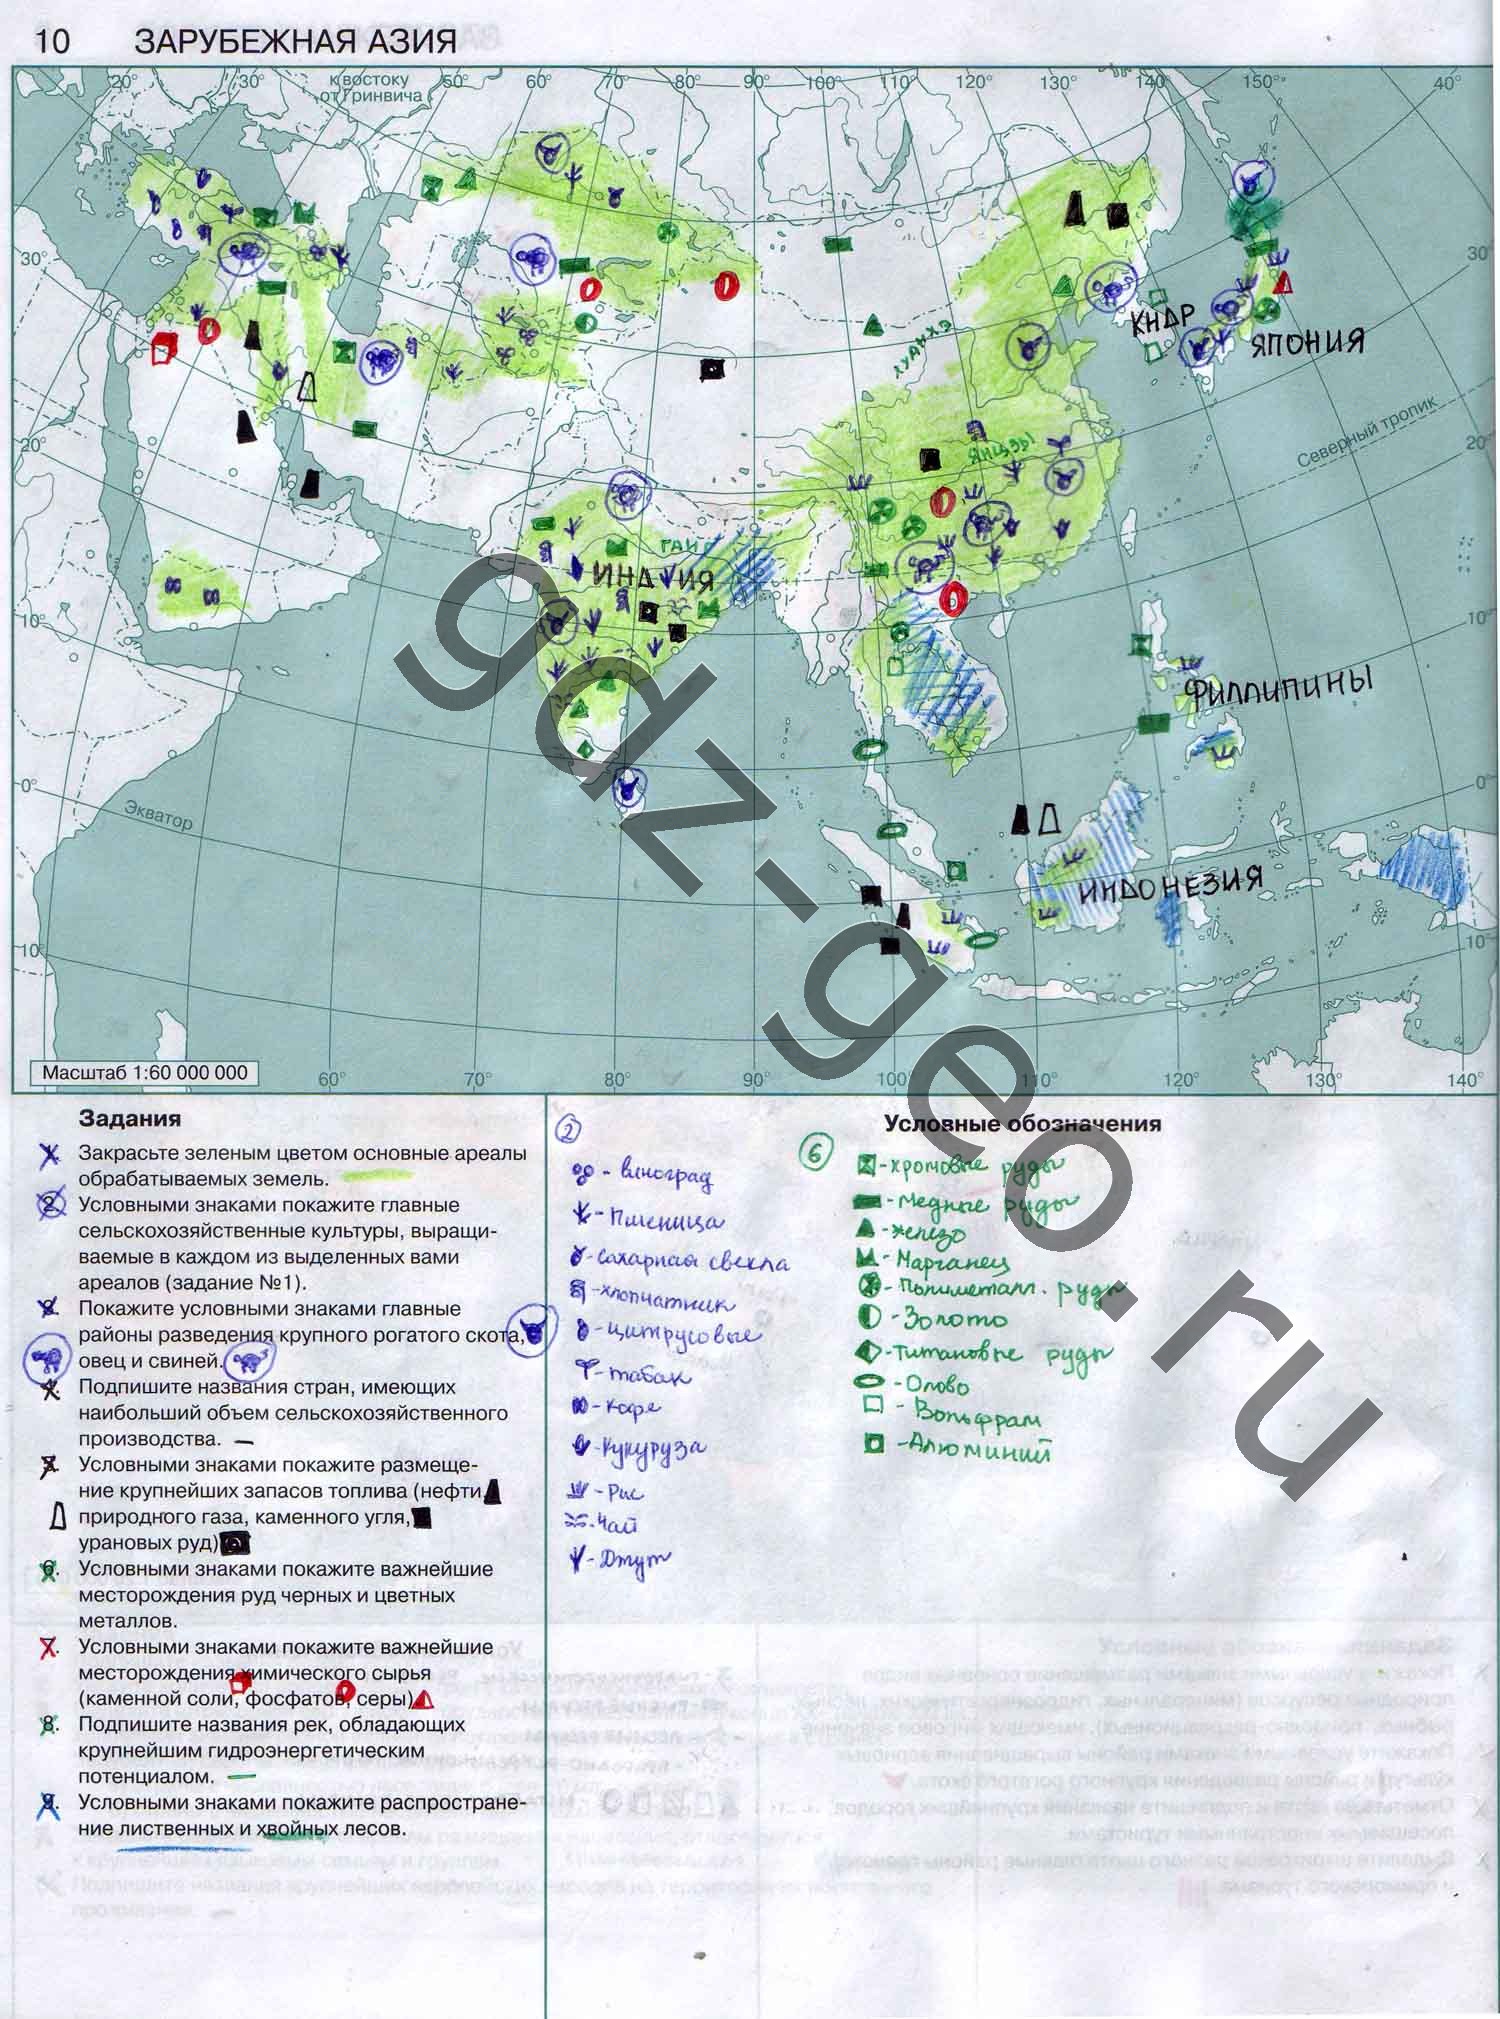 Контурные карты 10 класс аст пресс. Карта зарубежная Азия 10 класс контурная карта. Контурная карта зарубежной Азии 10 класс.